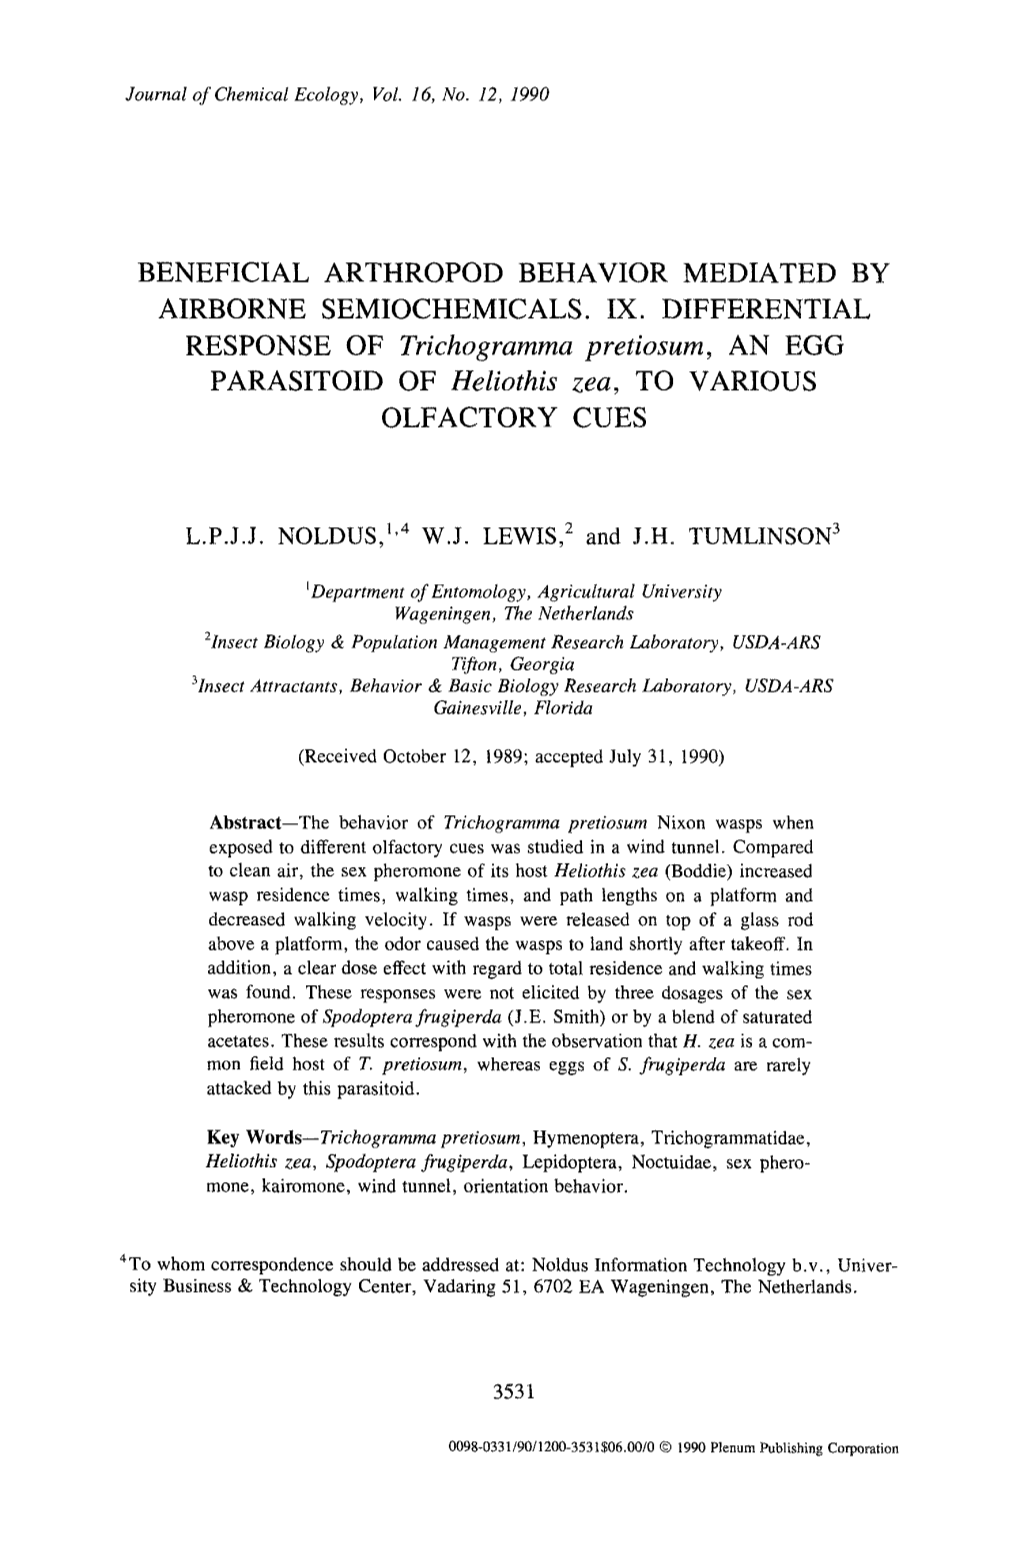 Beneficial Arthropod Behavior Mediated by Airborne Semiochemicals